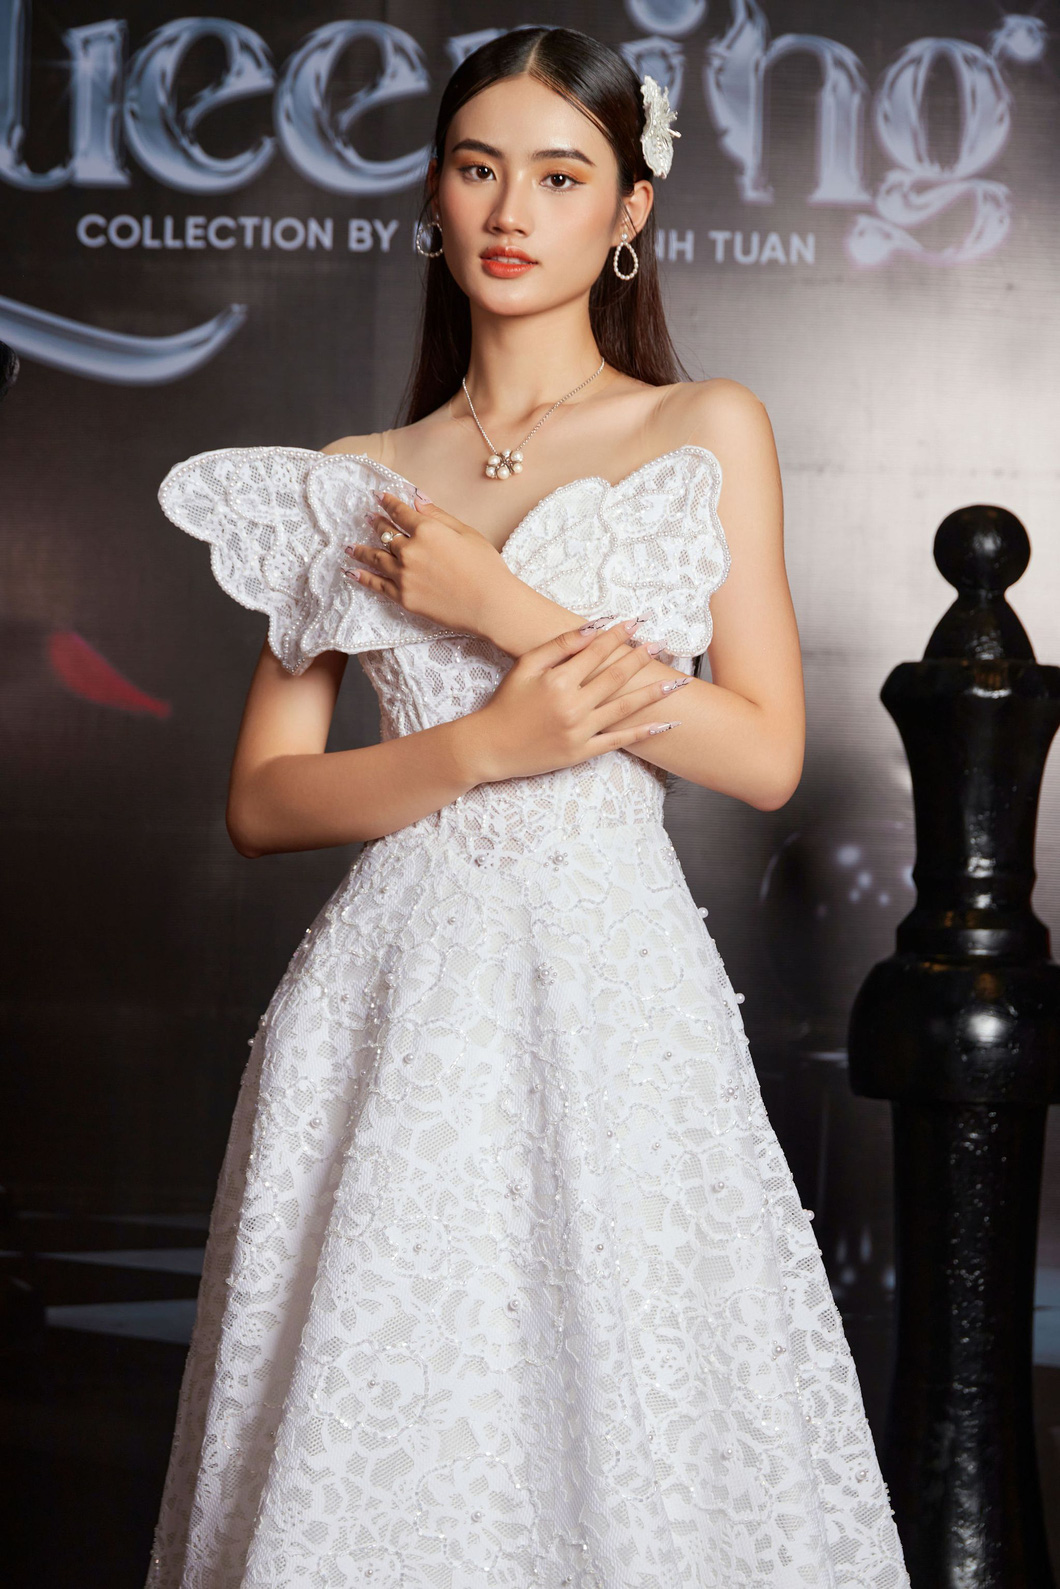 Hoa hậu Huỳnh Trần Ý Nhi trong thiết kế của Nguyễn Minh Tuấn - Ảnh: NTK cung cấp